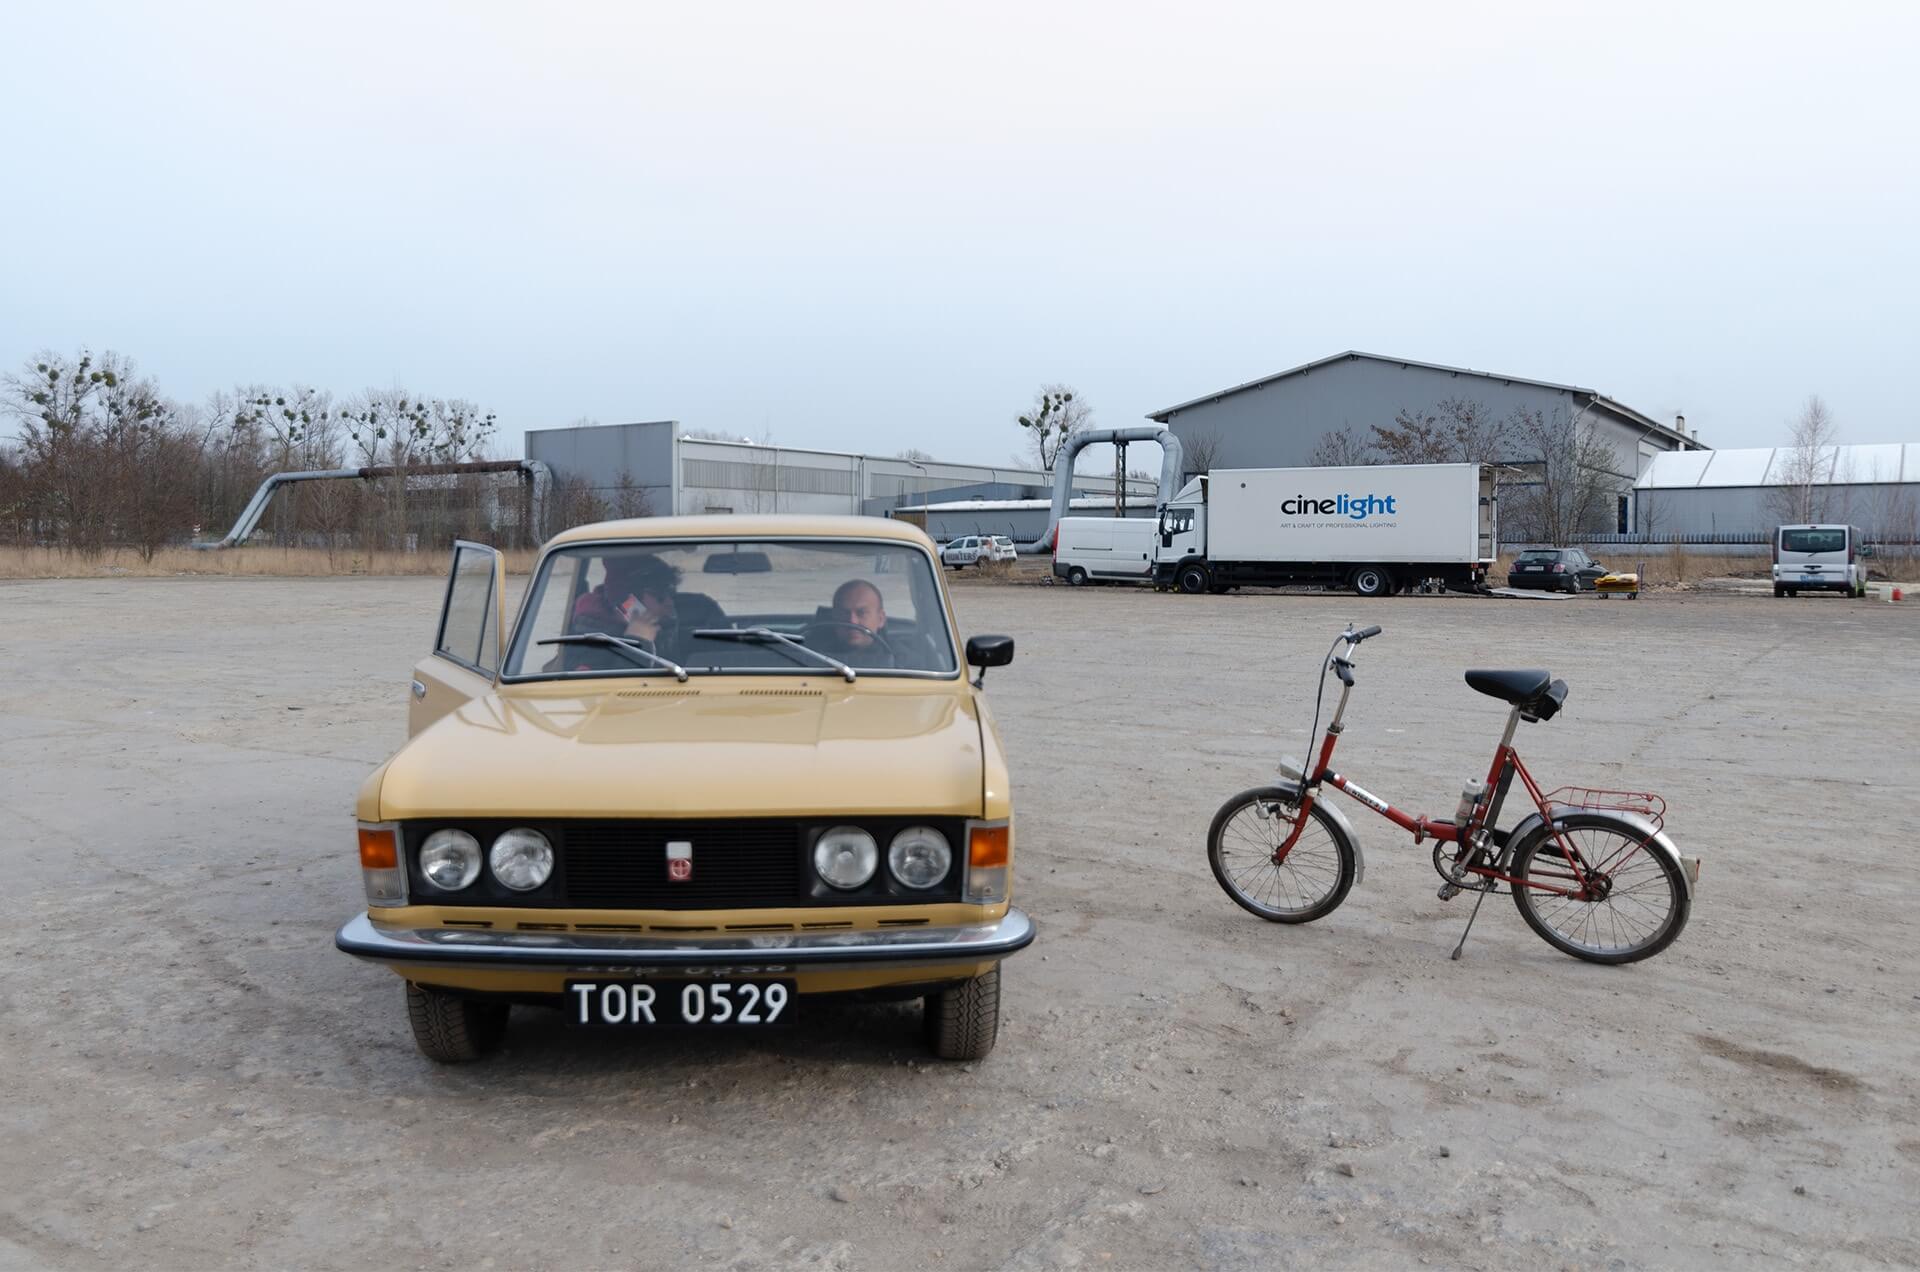 Fiat 125p i rower składak na planie filmowym w Bytomiu